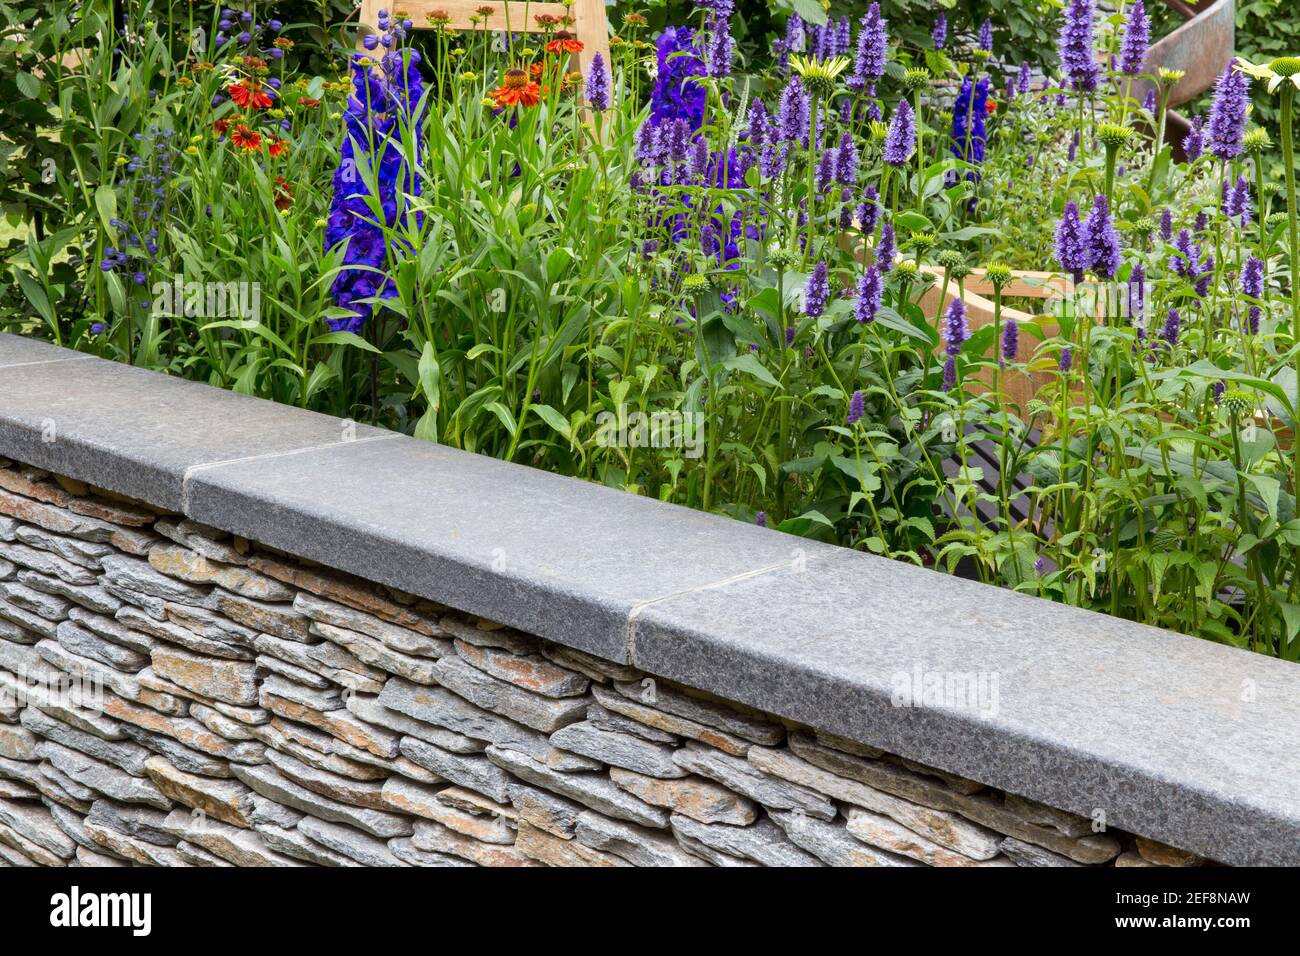 Cottage inglese giardino di campagna con muro di pietra a secco e giardino fiorito letto confine crescente Agastache fiori in estate Londra UK Inghilterra Foto Stock